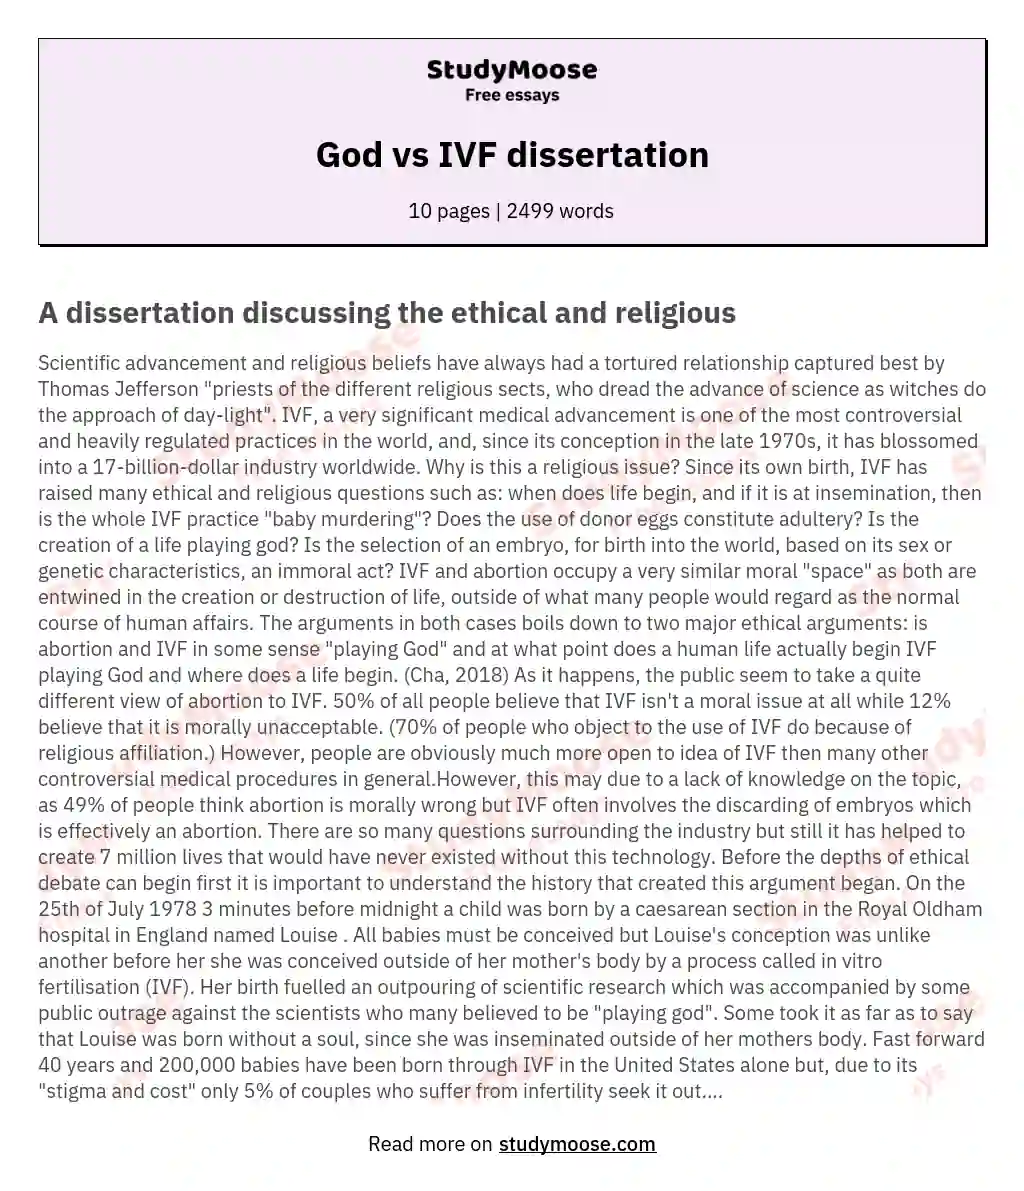 God vs IVF dissertation essay